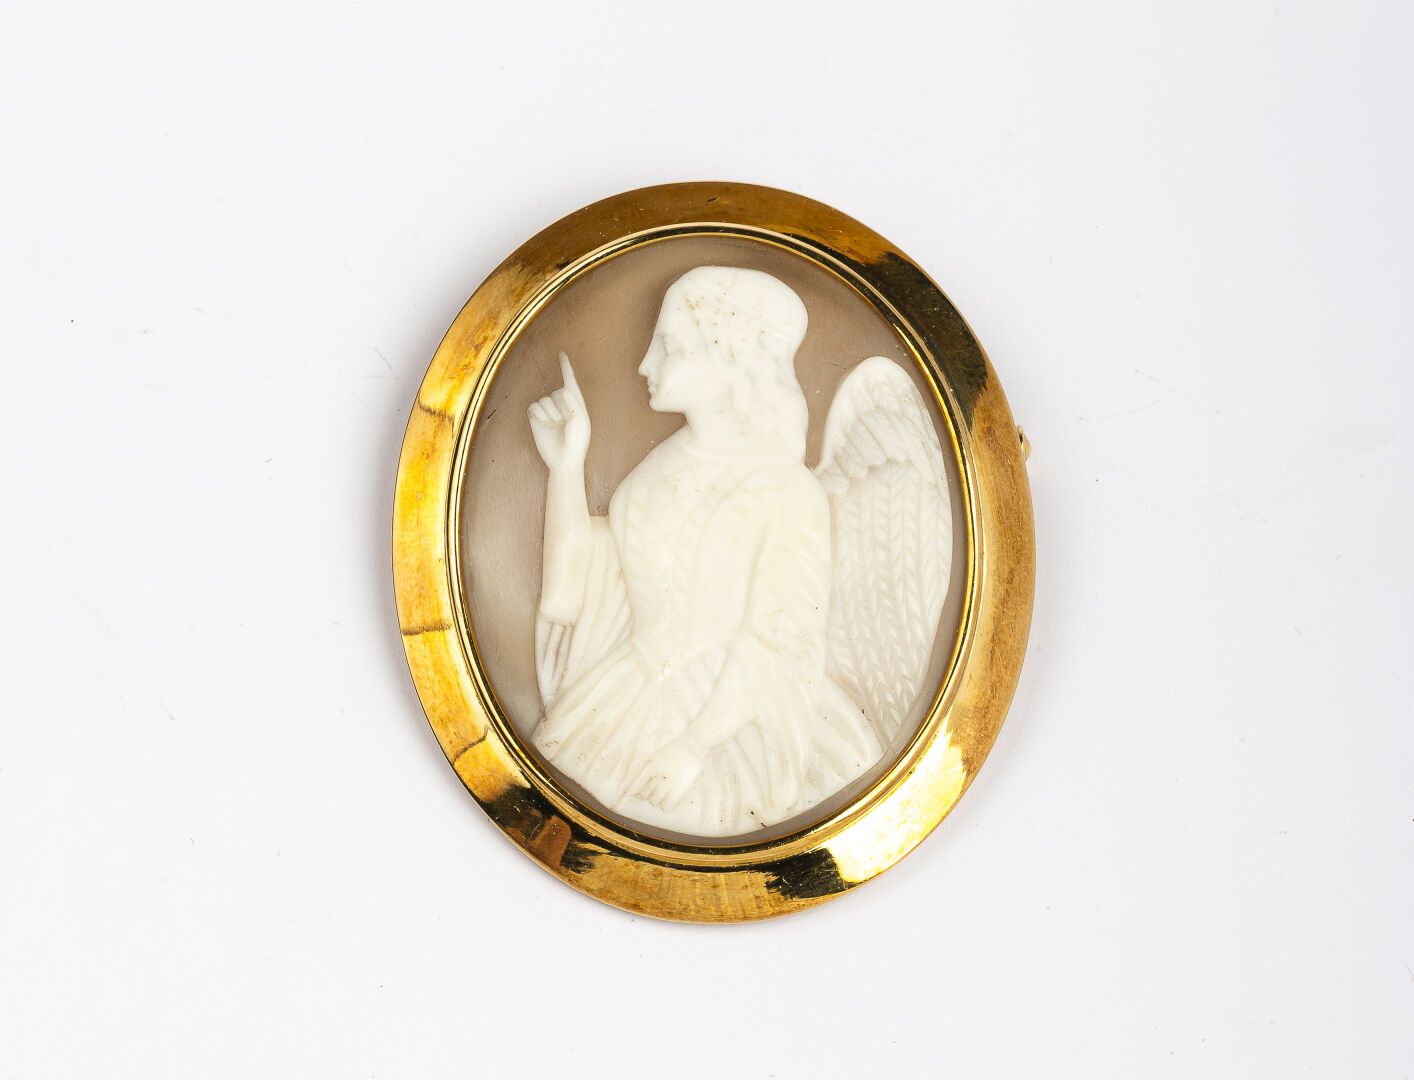 Null 小册子

金色 750°/°

装饰有贝壳浮雕 "创造天使的寓言"。

19世纪中期的作品

毛重 : 23,3 g